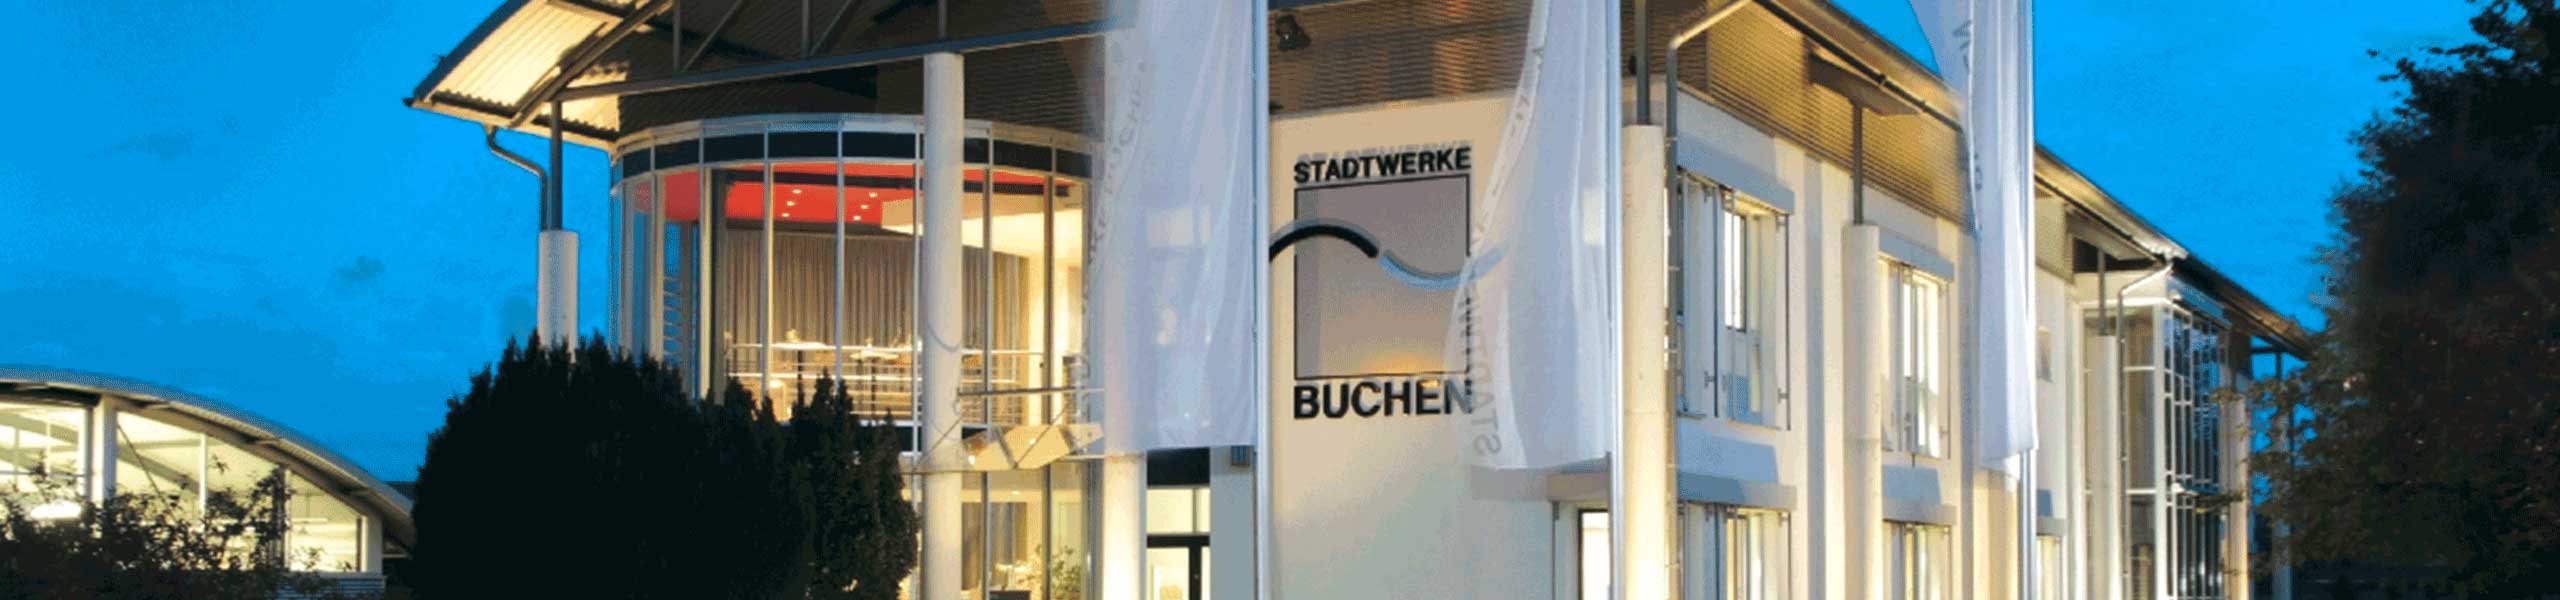 Stadtwerke Buchen GmbH & Co KG - Netze